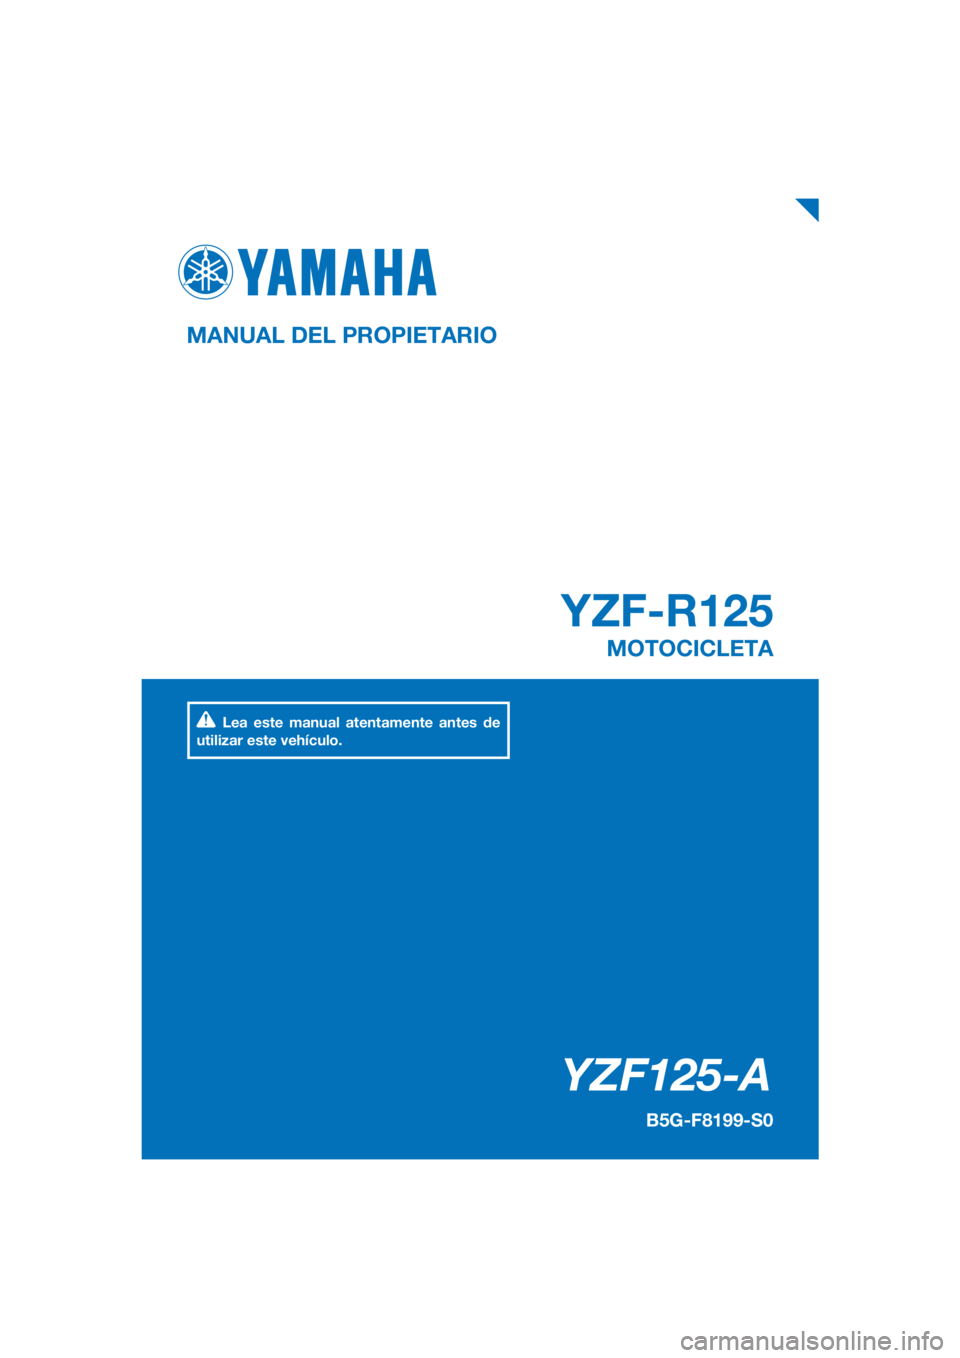 YAMAHA YZF-R125 2019  Manuale de Empleo (in Spanish) PANTONE285C
YZF125-A
YZF-R125
MANUAL DEL PROPIETARIO
B5G-F8199-S0
MOTOCICLETA
Lea este manual atentamente antes de 
utilizar este vehículo.
[Spanish  (S)] 